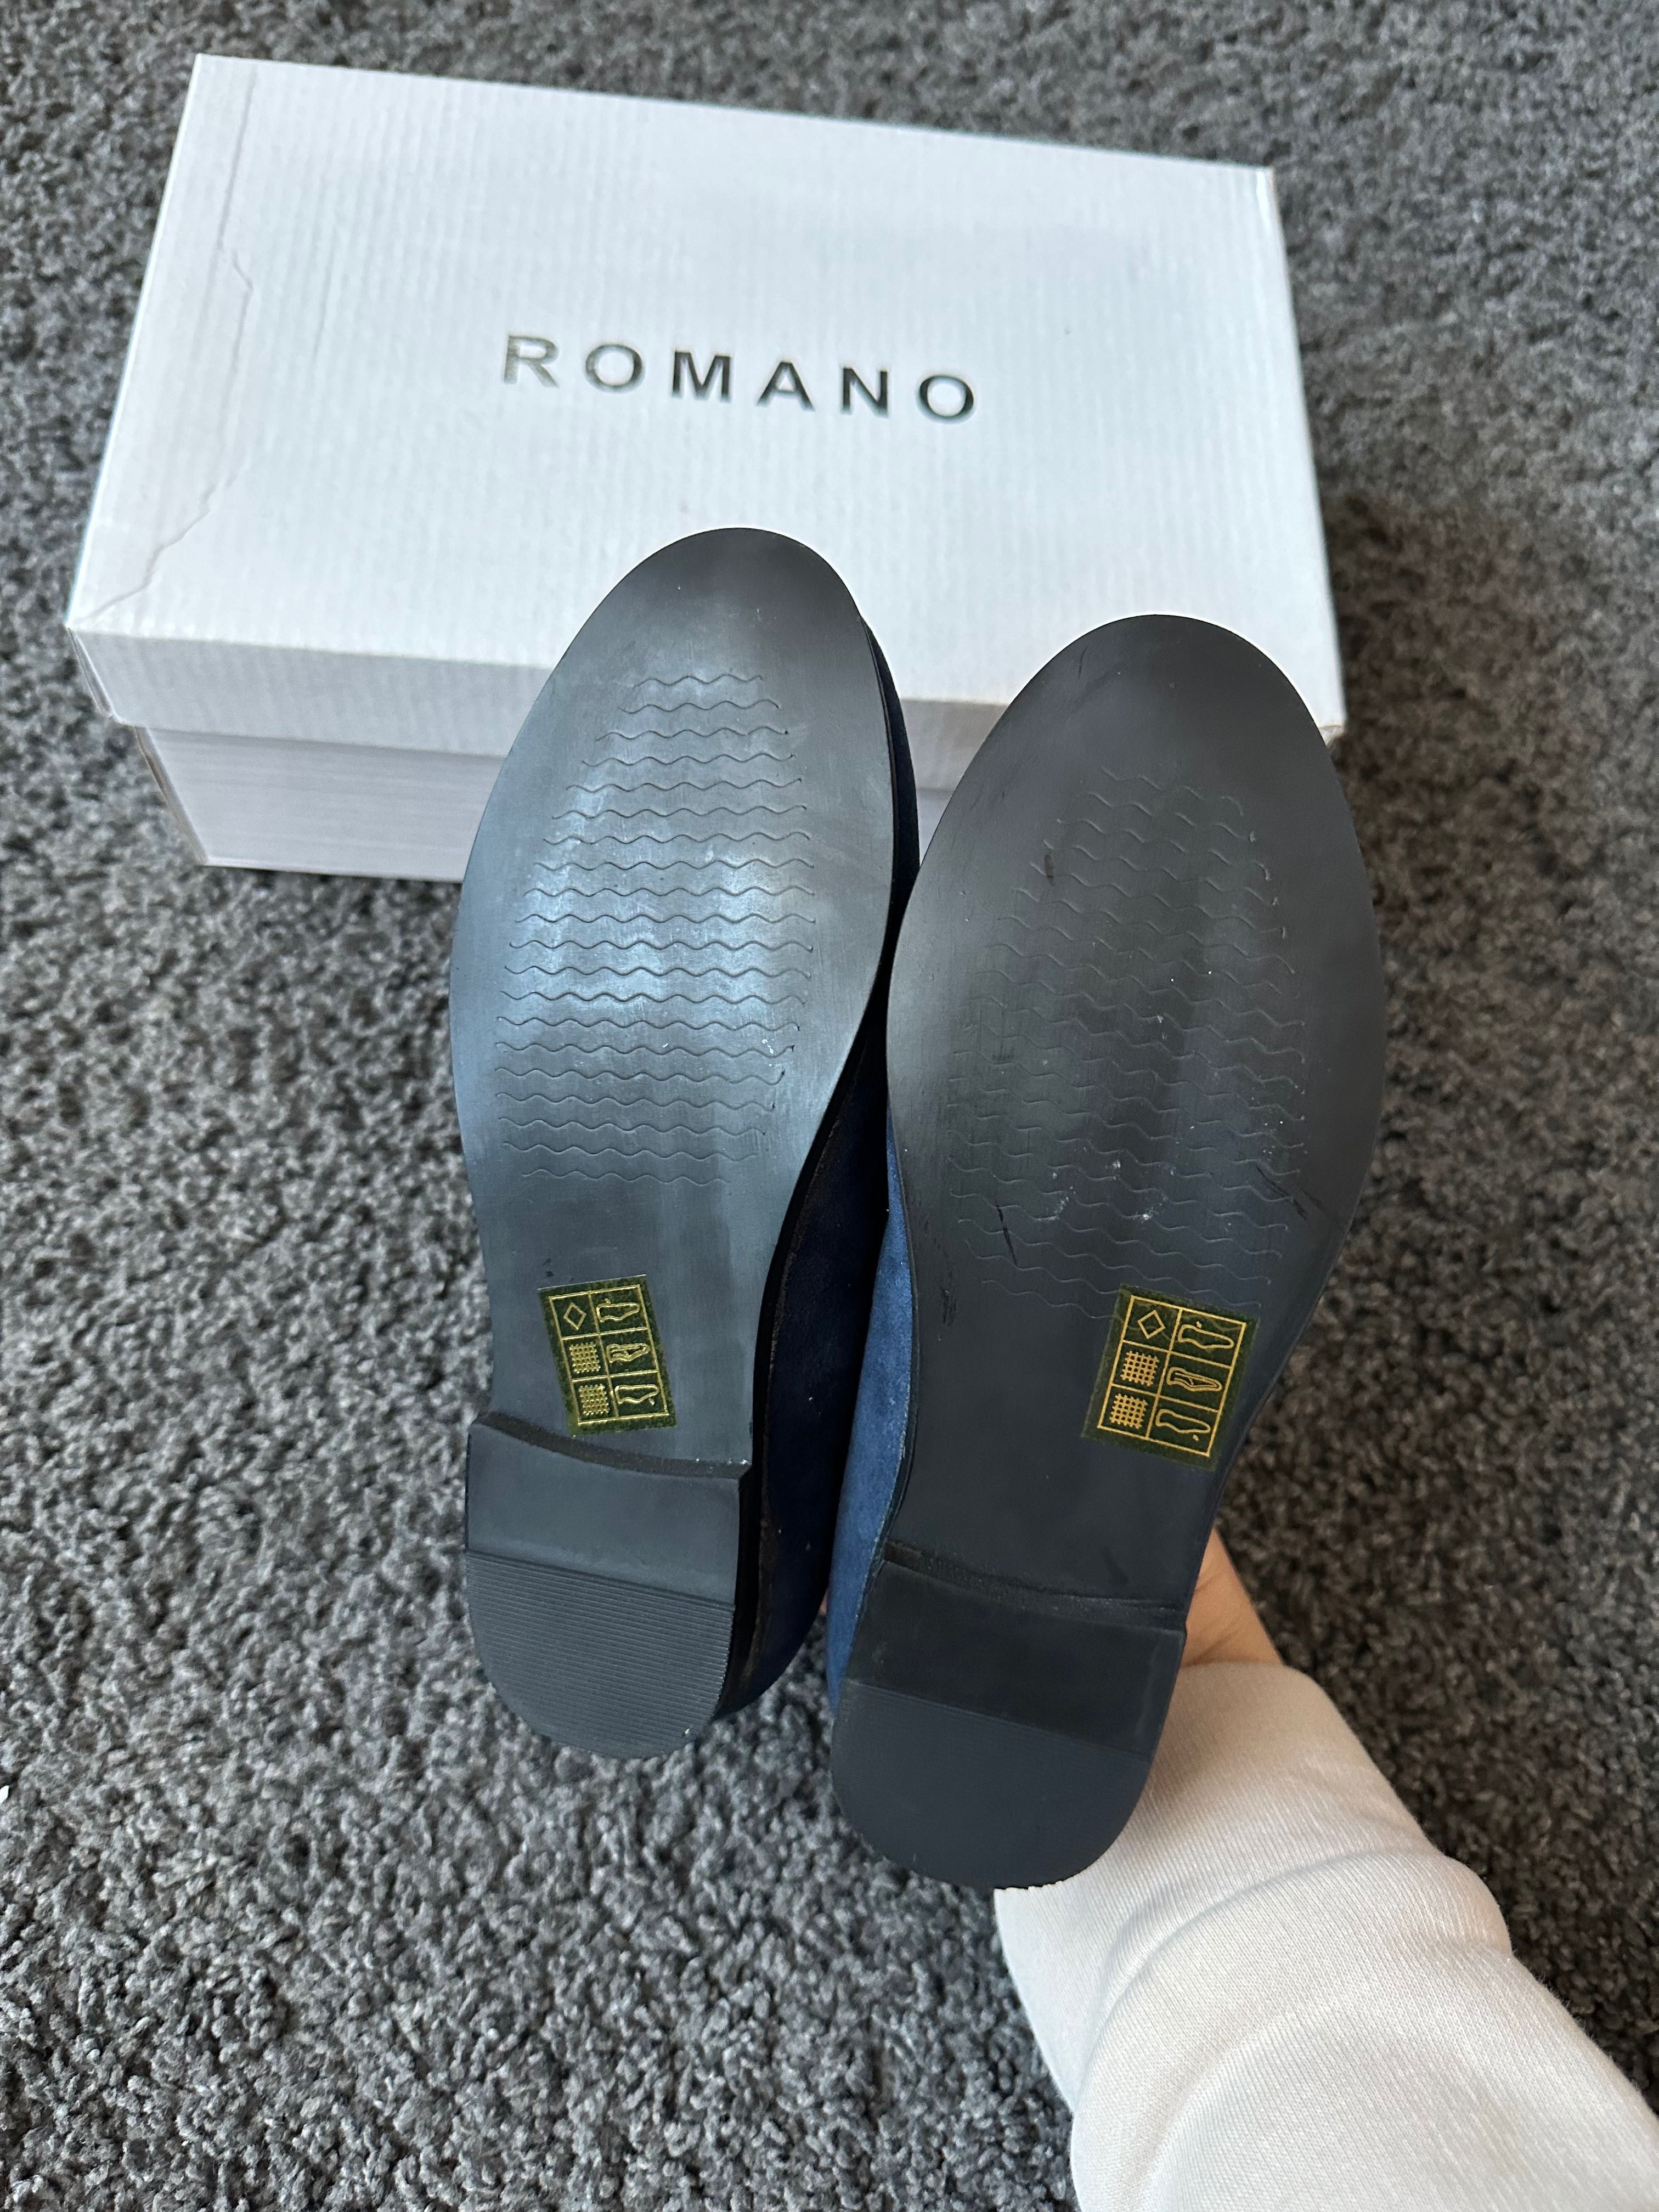 Детски обувки Romano, велур